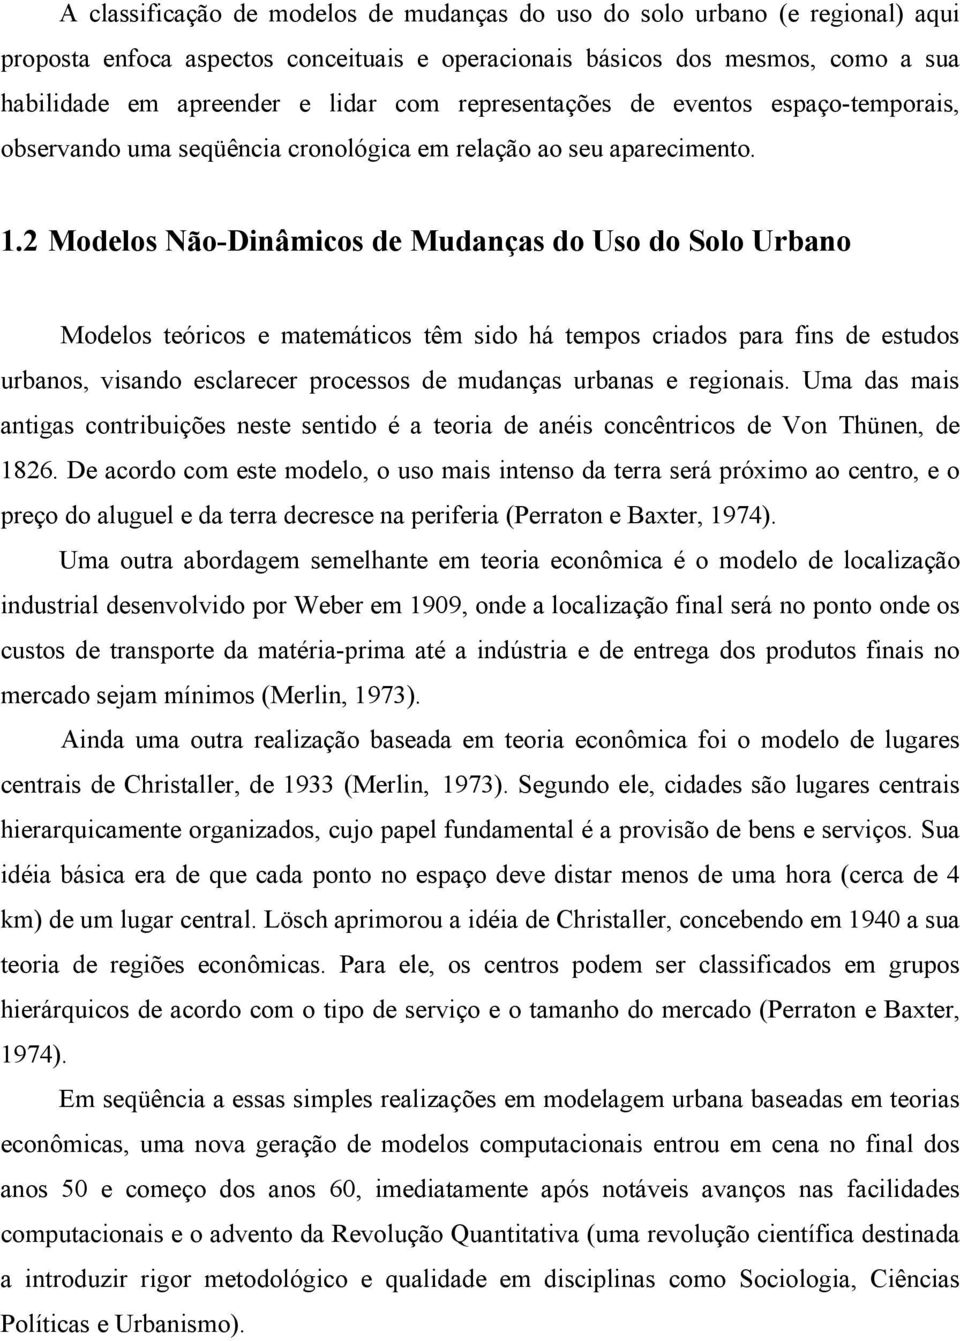 2 Modelos Não-Dinâmicos de Mudanças do Uso do Solo Urbano Modelos teóricos e matemáticos têm sido há tempos criados para fins de estudos urbanos, visando esclarecer processos de mudanças urbanas e